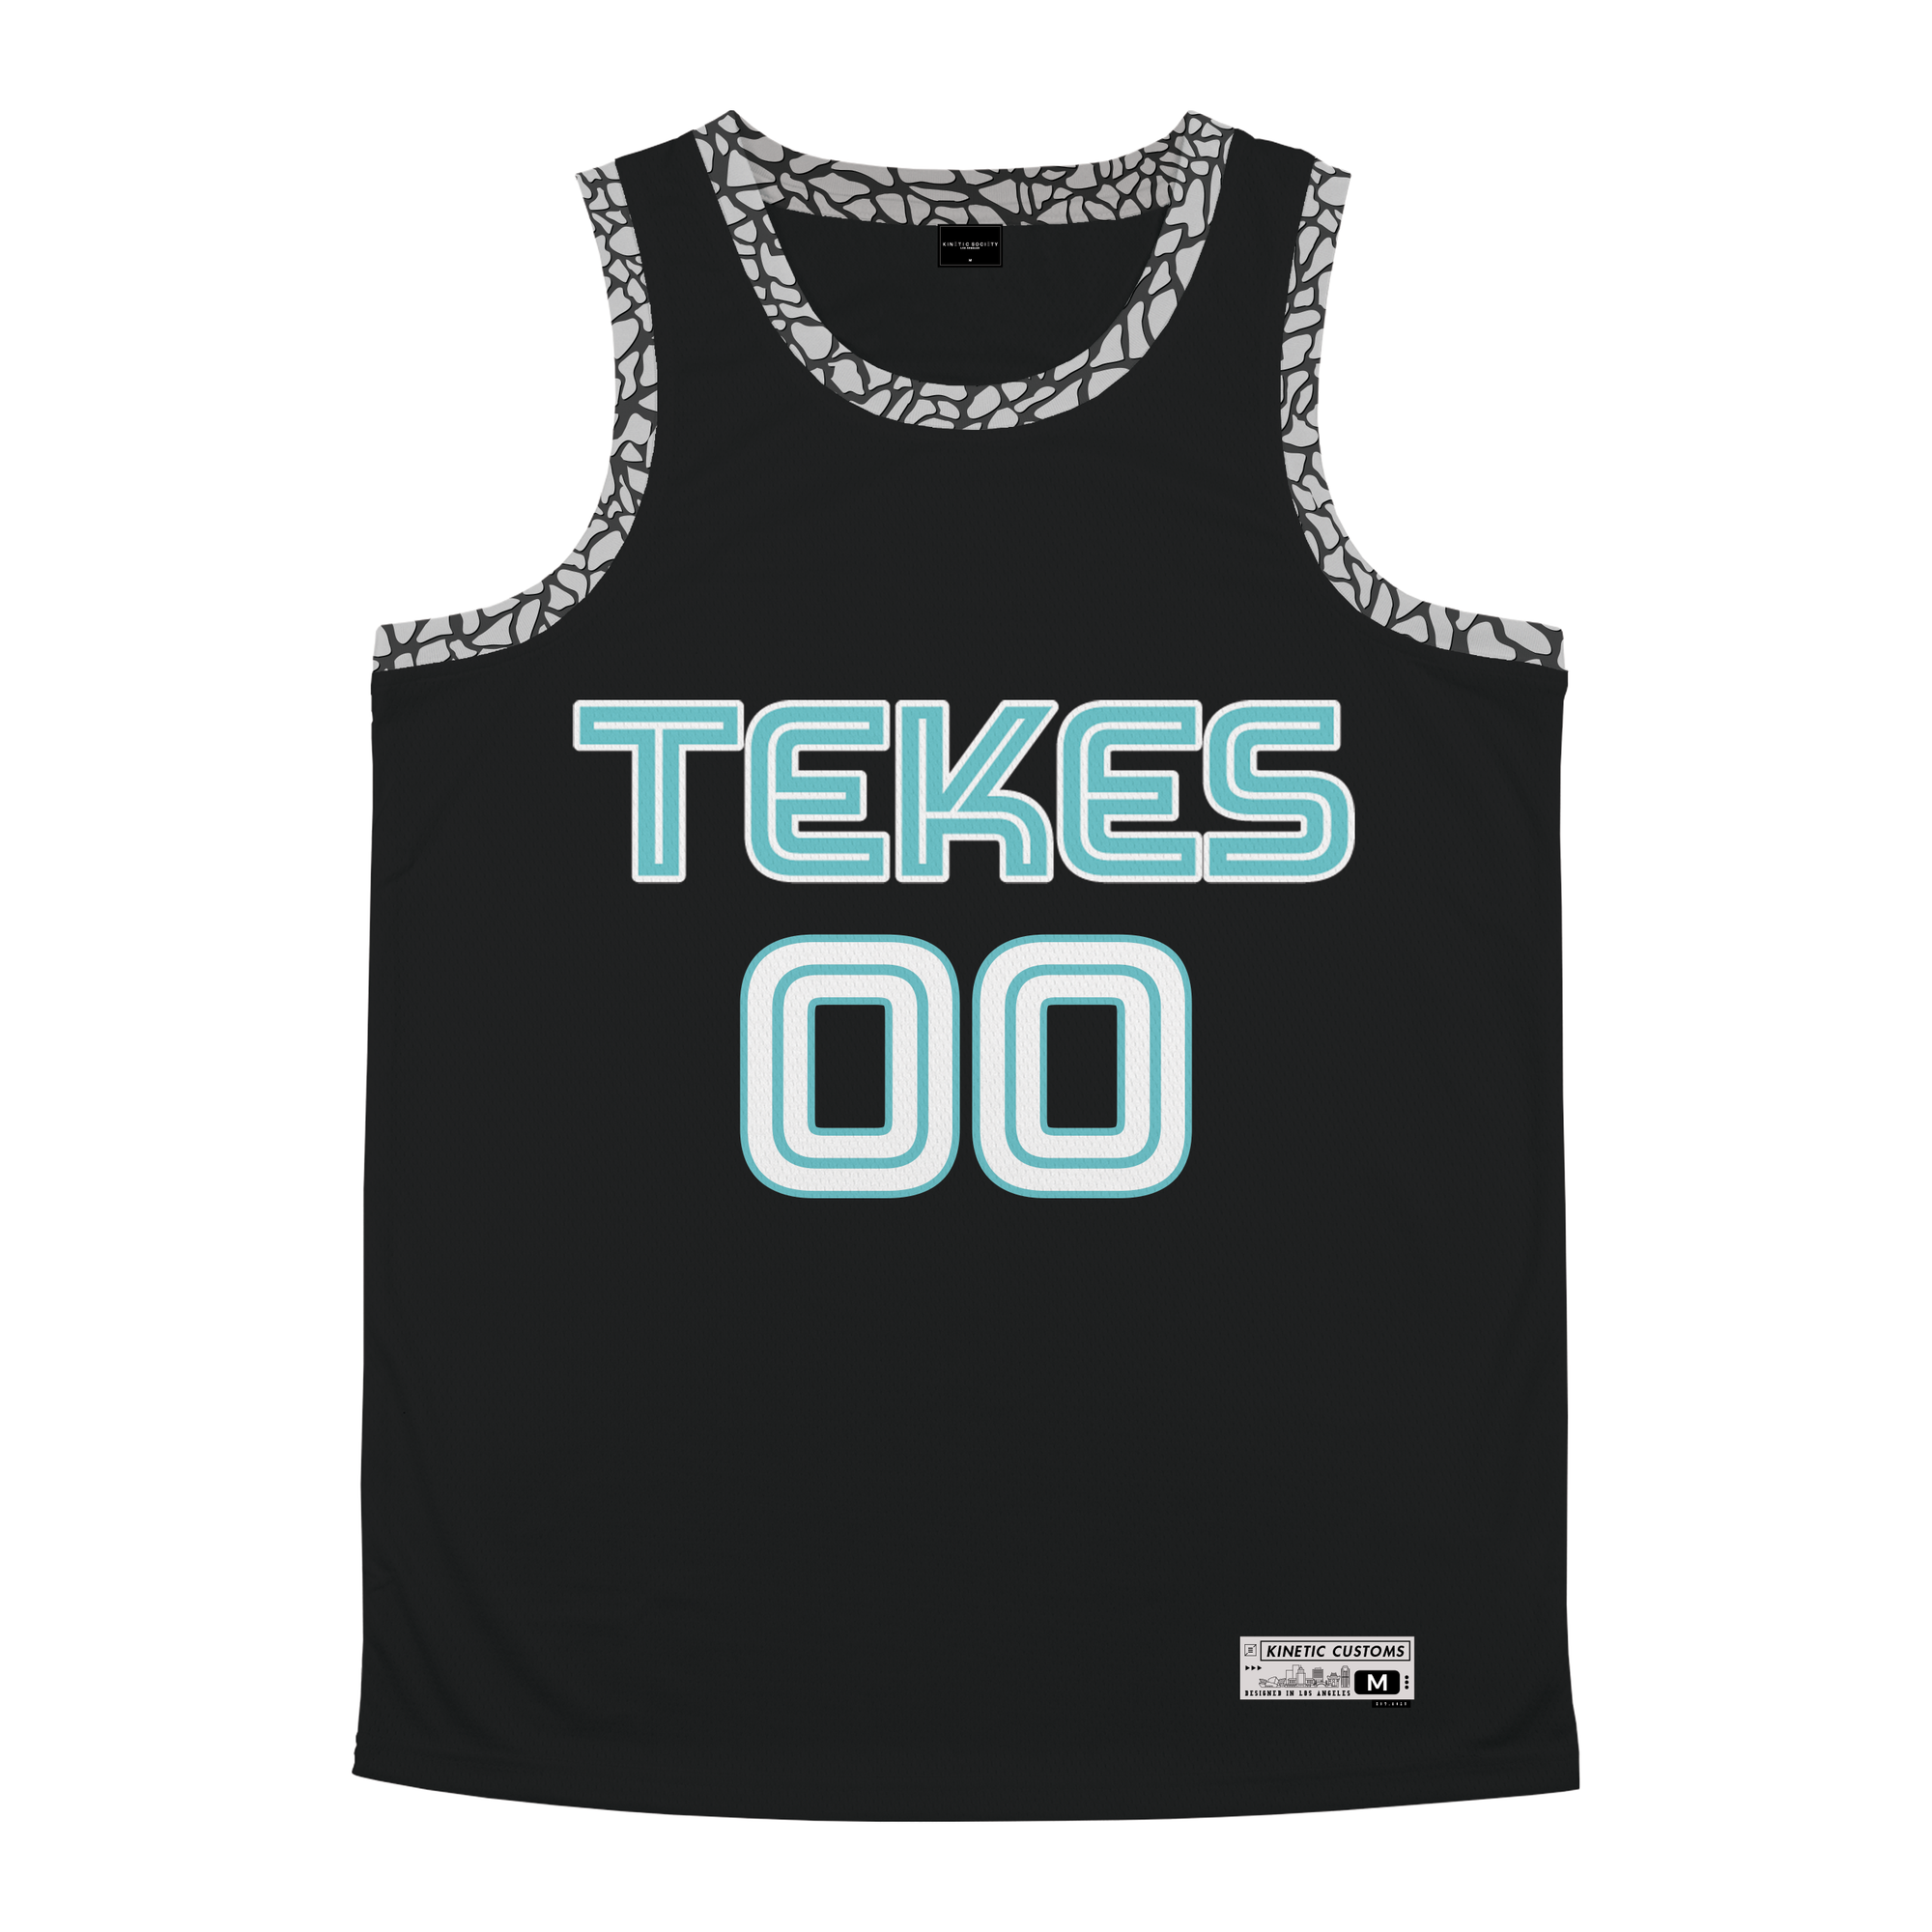 Tau Kappa Epsilon - Cement Basketball Jersey